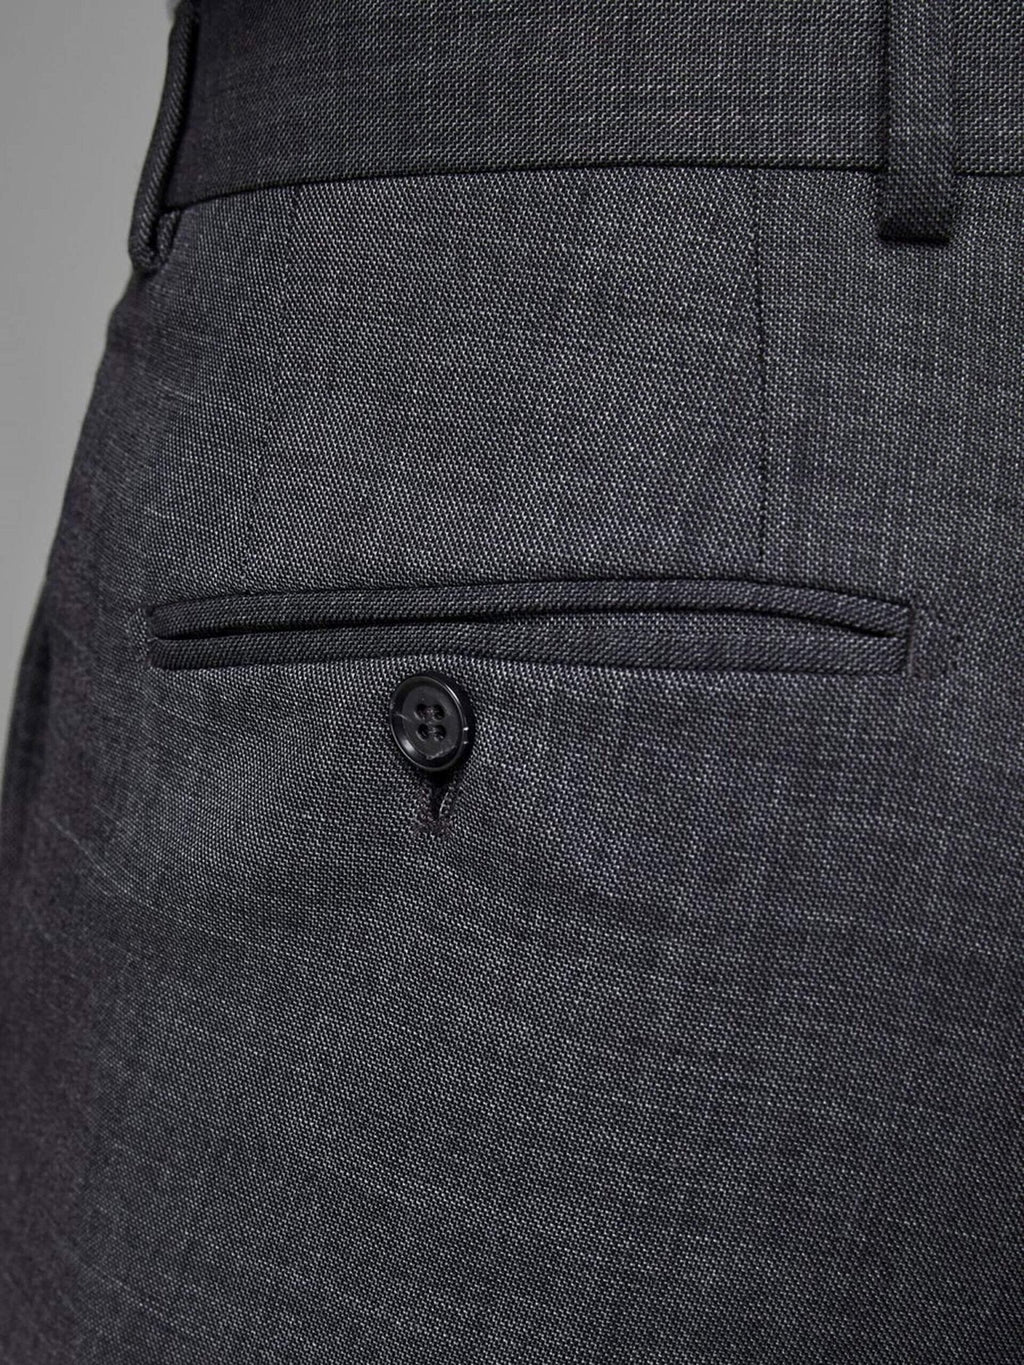 Κλασικό κοστούμι pants Slimfit - σκούρο γκρι